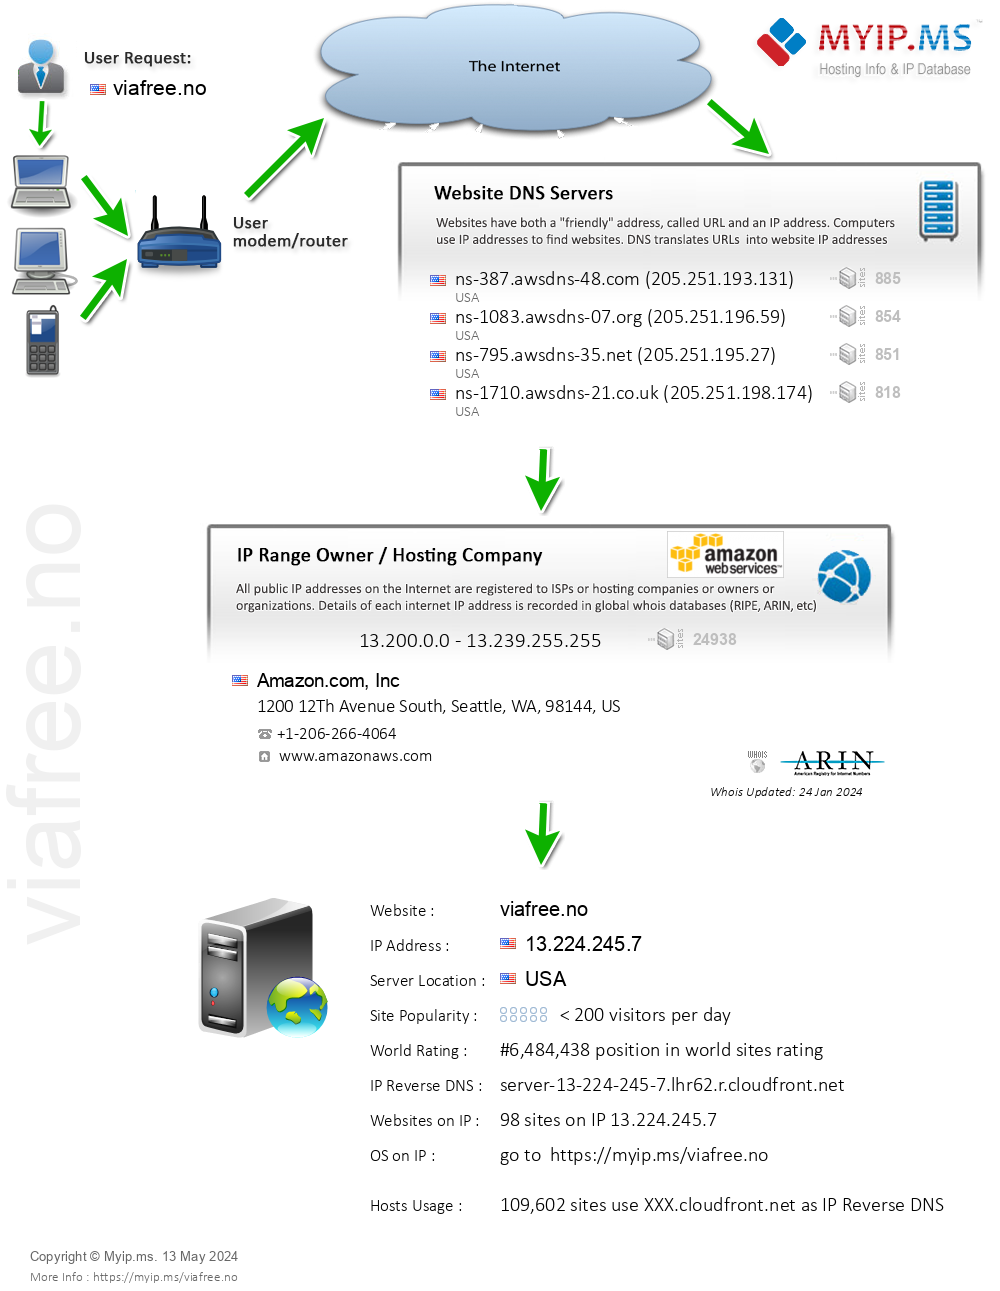 Viafree.no - Website Hosting Visual IP Diagram